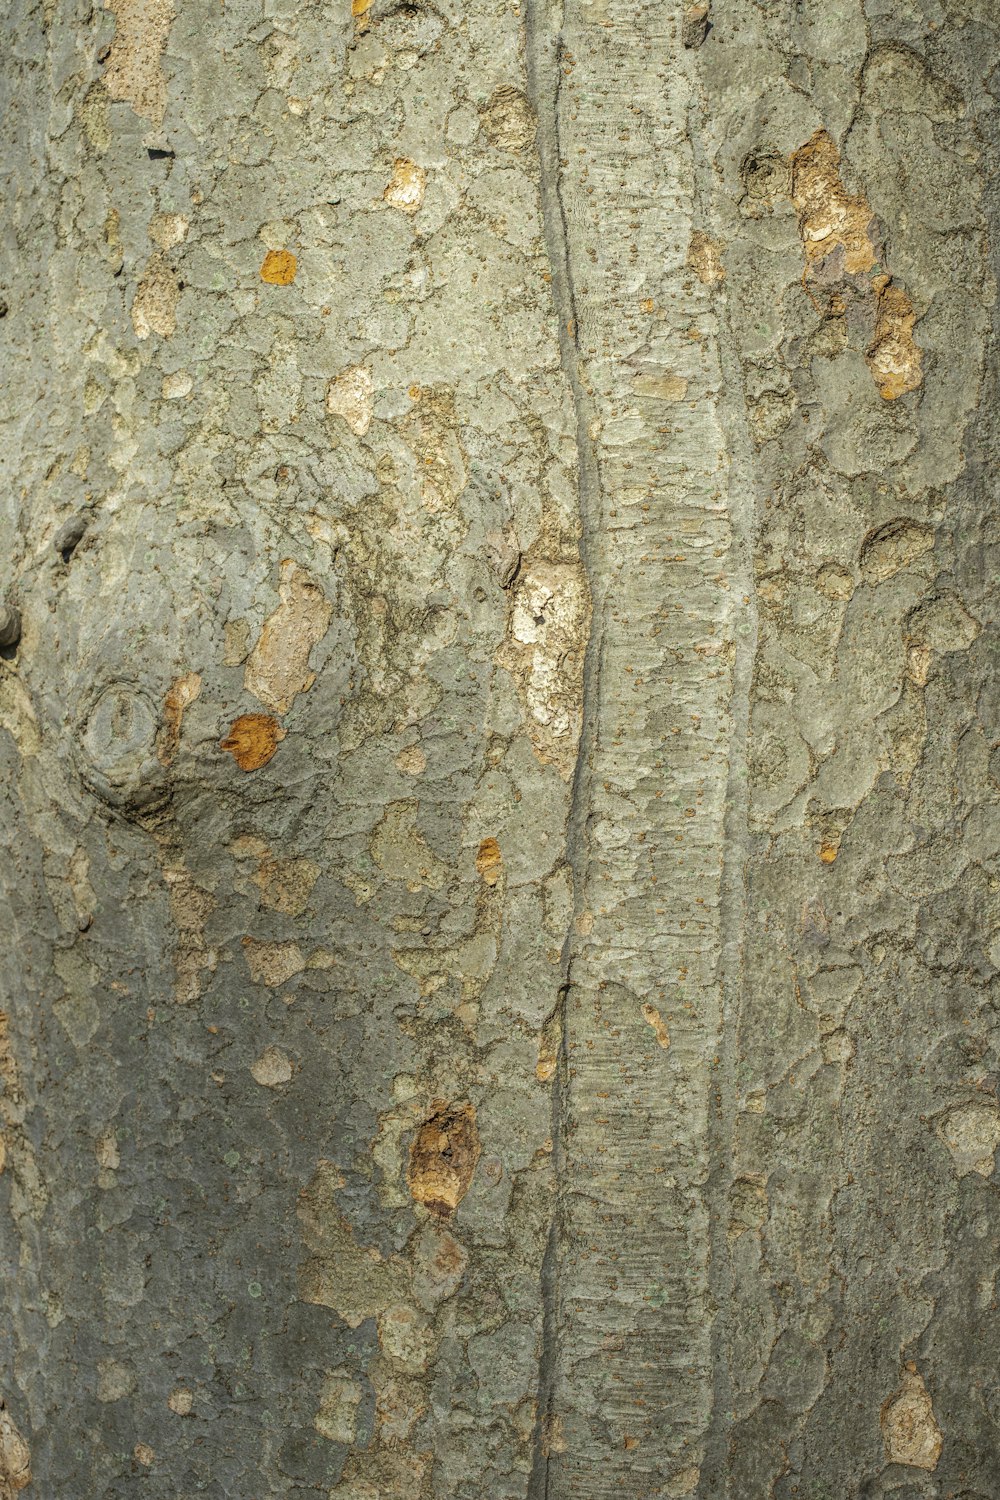 um close up de um tronco de árvore com um pássaro empoleirado nele